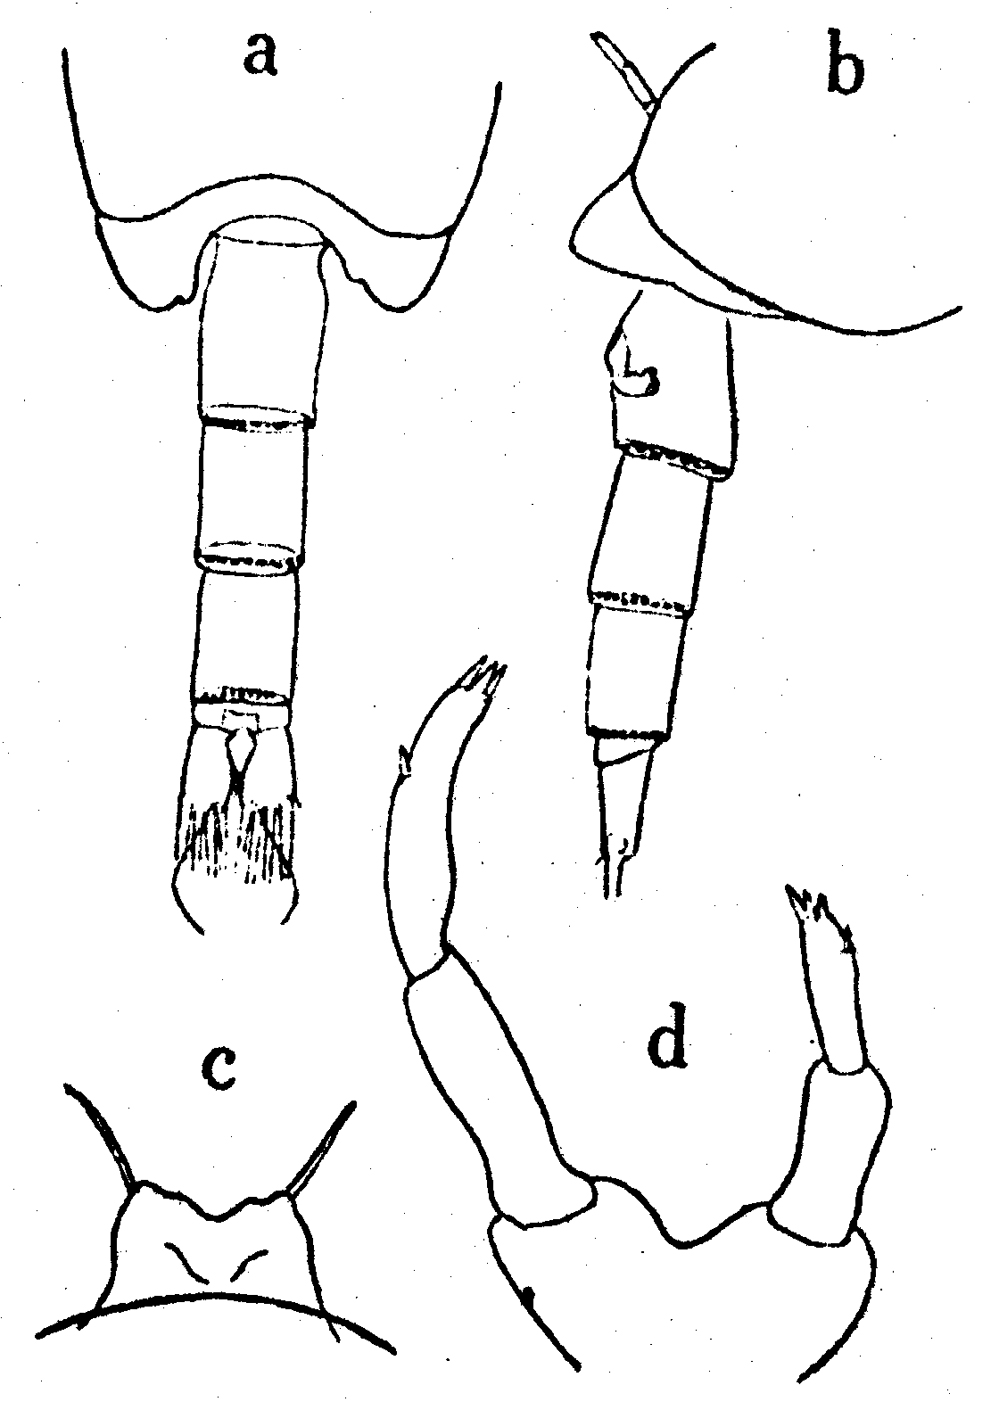 Espce Undinella frontalis - Planche 2 de figures morphologiques